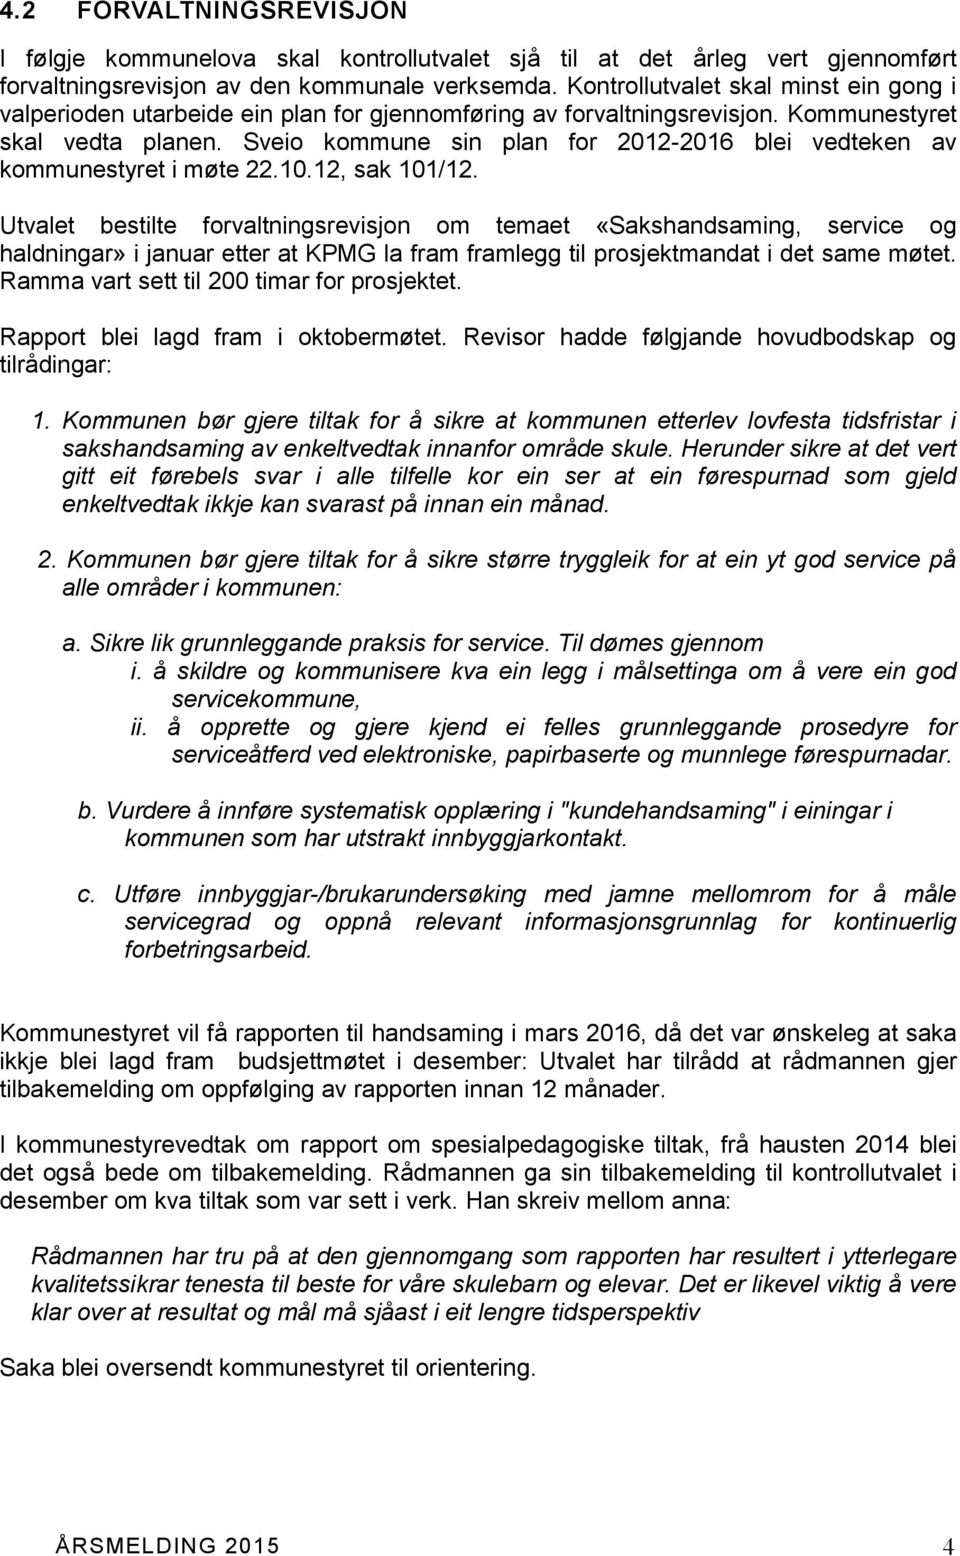 Sveio kommune sin plan for 2012-2016 blei vedteken av kommunestyret i møte 22.10.12, sak 101/12.